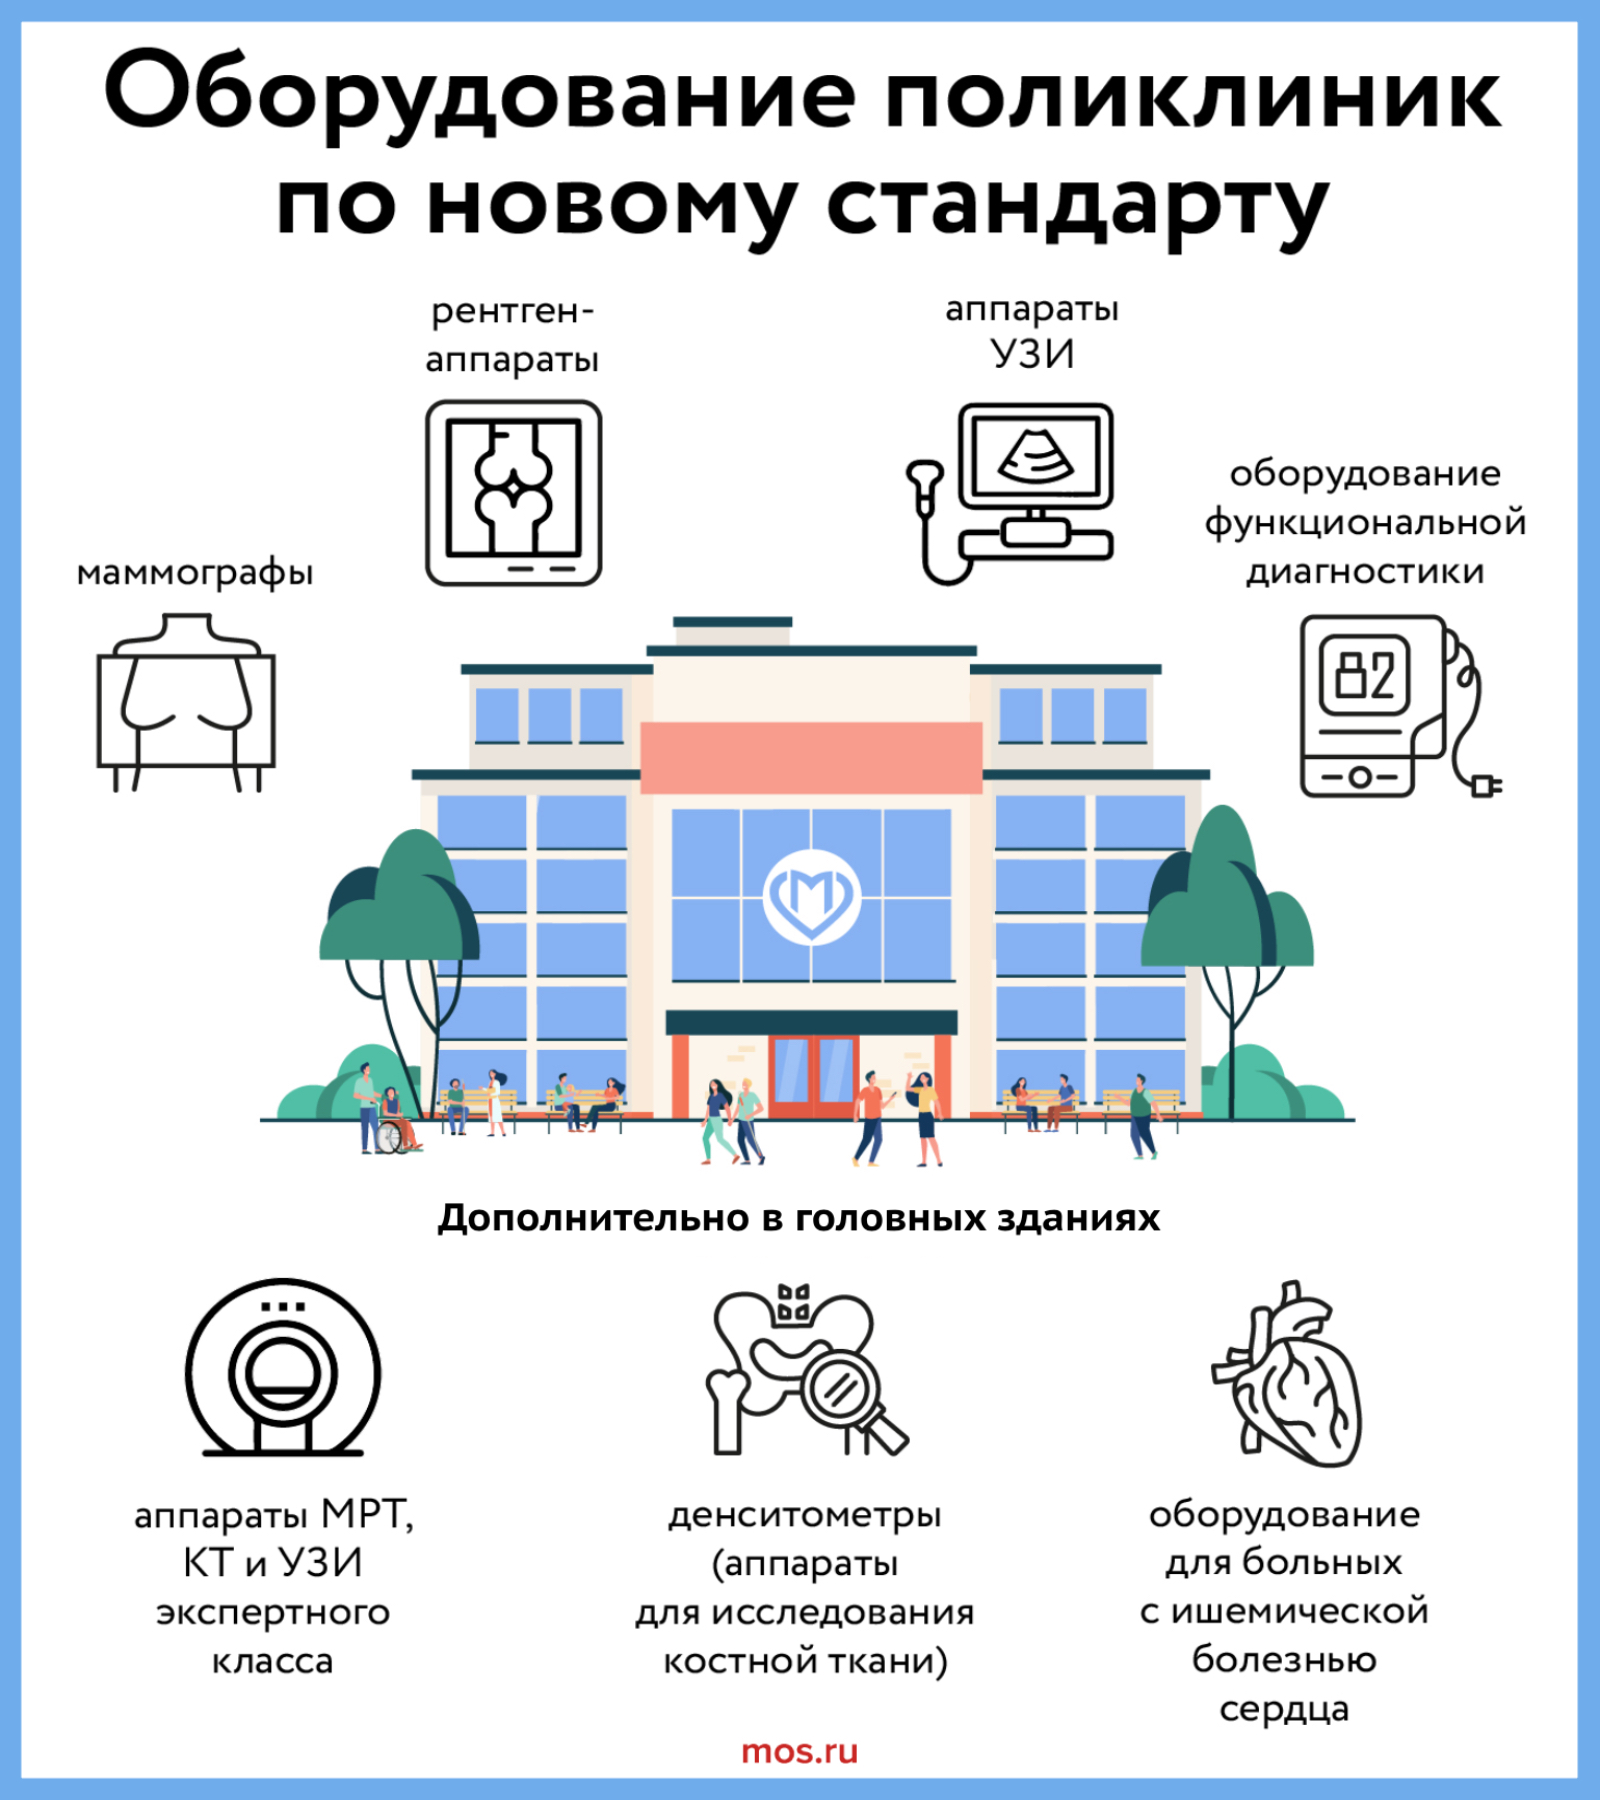 Сергей Собянин заявил о завершении реконструкции 82 городских поликлиник